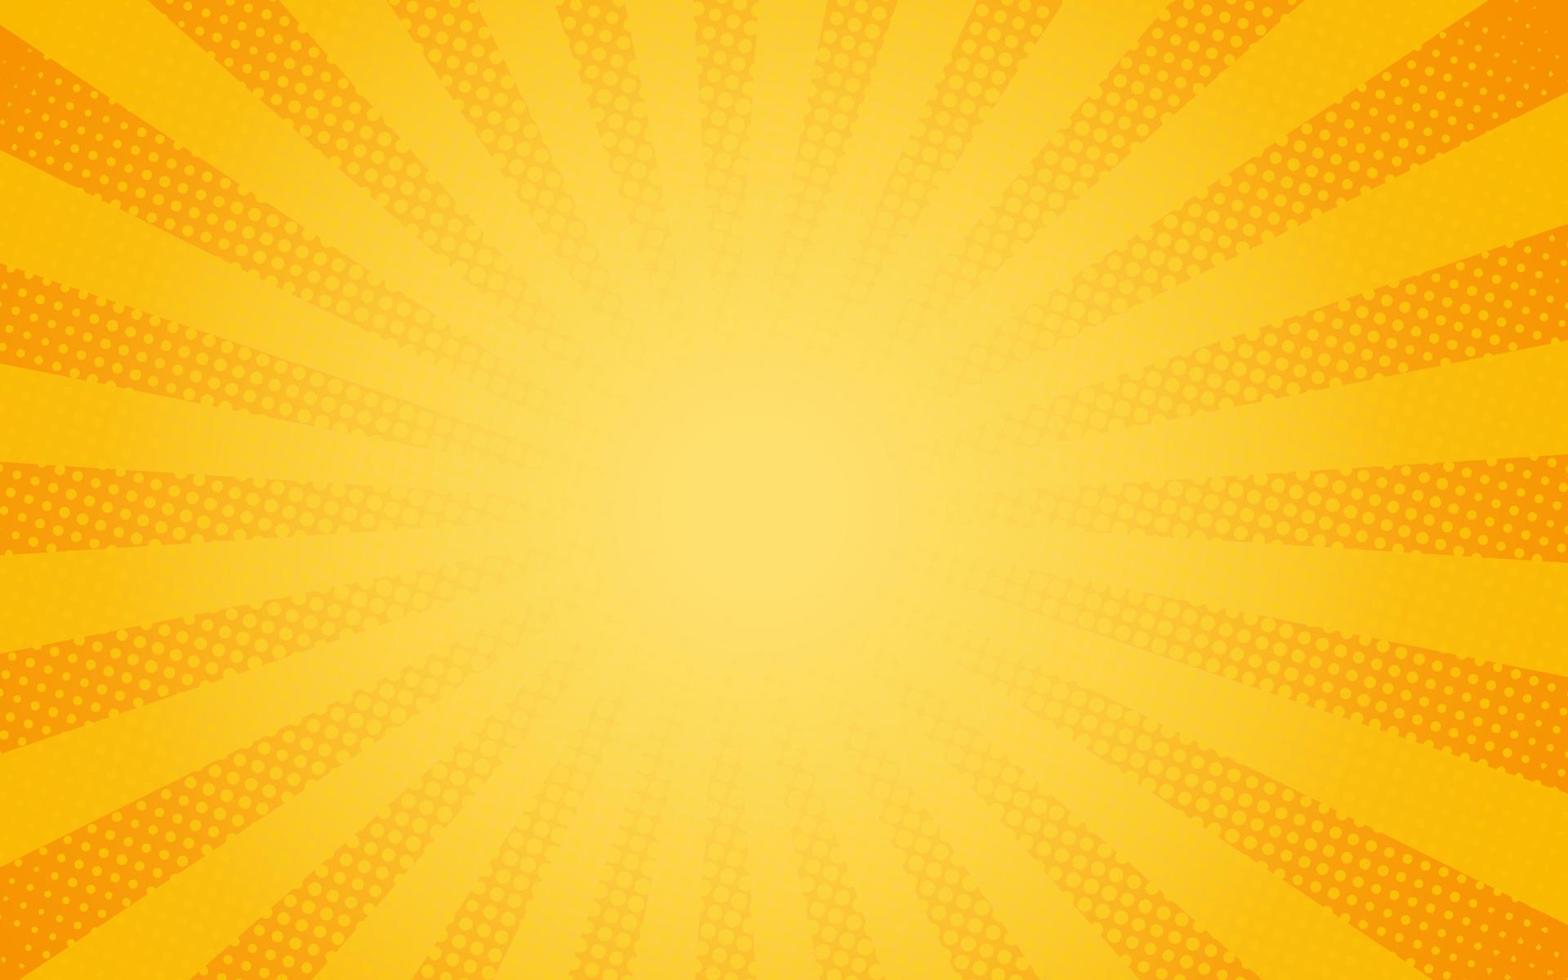 raggi di sole in stile vintage retrò su sfondo giallo e arancione, motivo a fumetti con starburst e mezzitoni. effetto sunburst retrò dei cartoni animati con punti. raggi. illustrazione vettoriale banner estivo